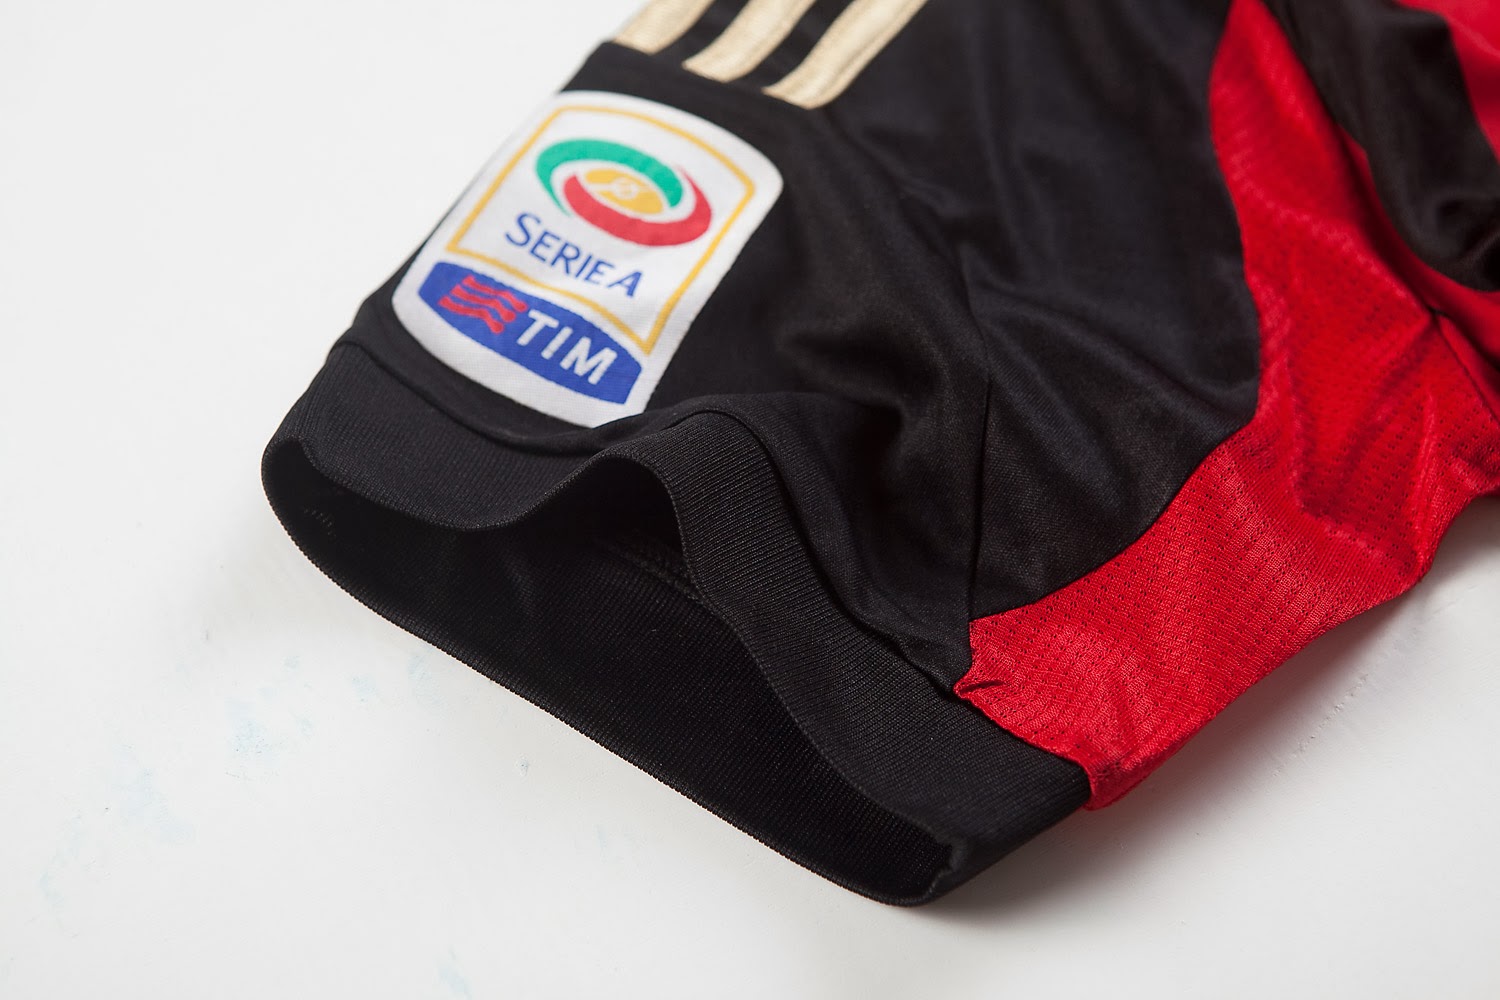 Equipaciones de futbol baratas 2015 online: nueva camisetas de futbol ac milan 2014 baratas